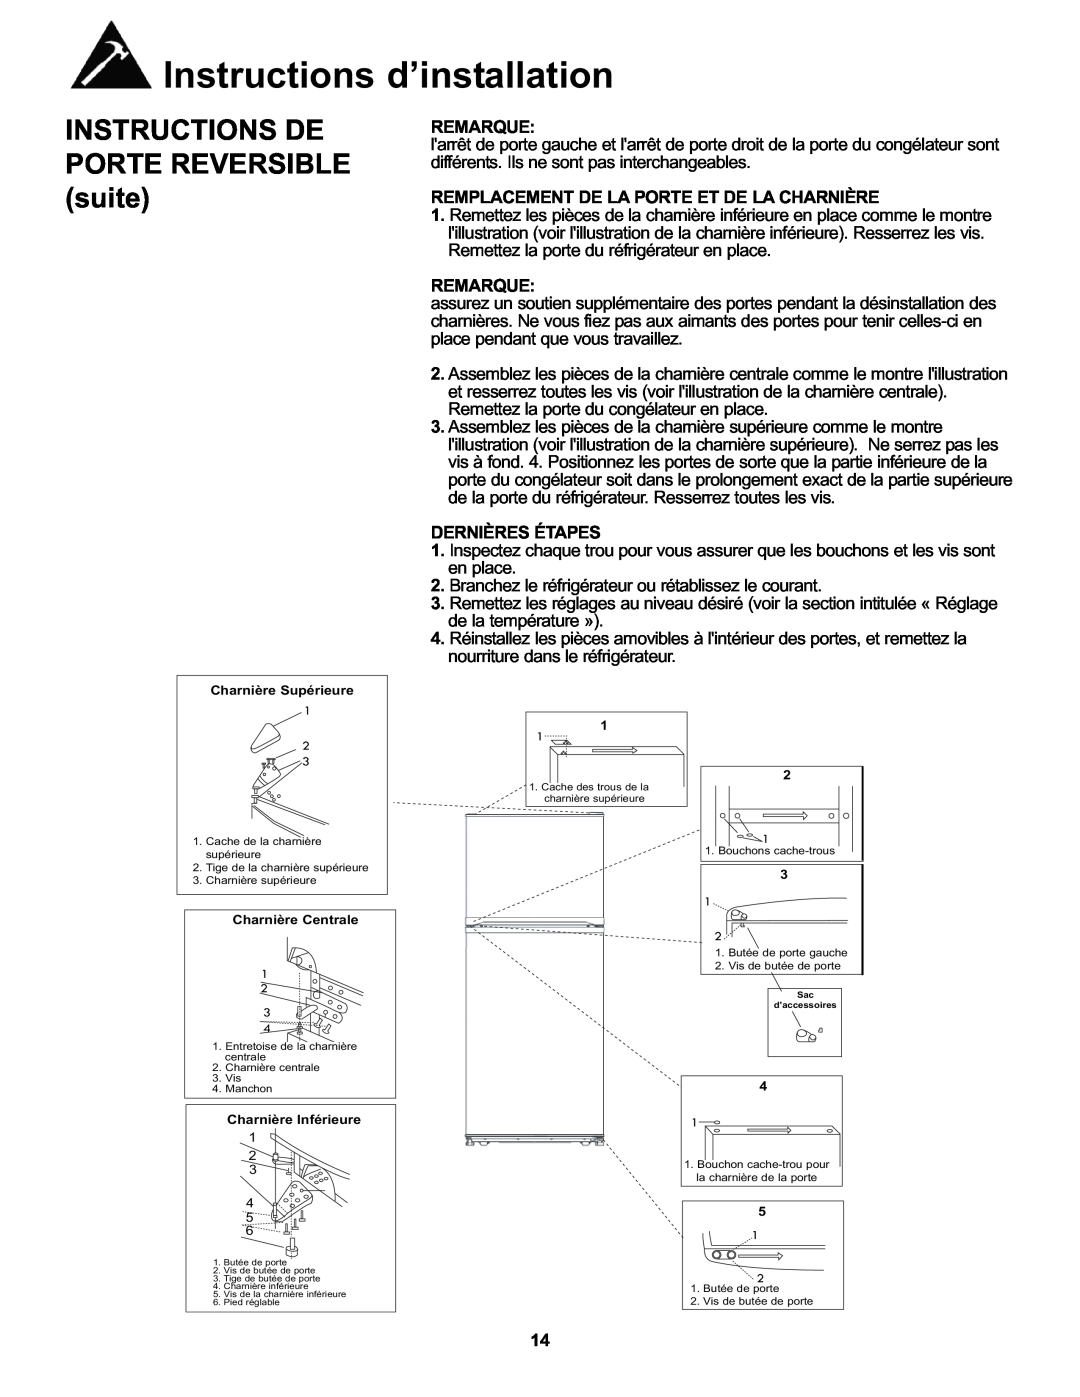 Danby DFF100A2WDB manual INSTRUCTIONS DE PORTE REVERSIBLE suite, Remarque, Remplacement De La Porte Et De La Charnière 